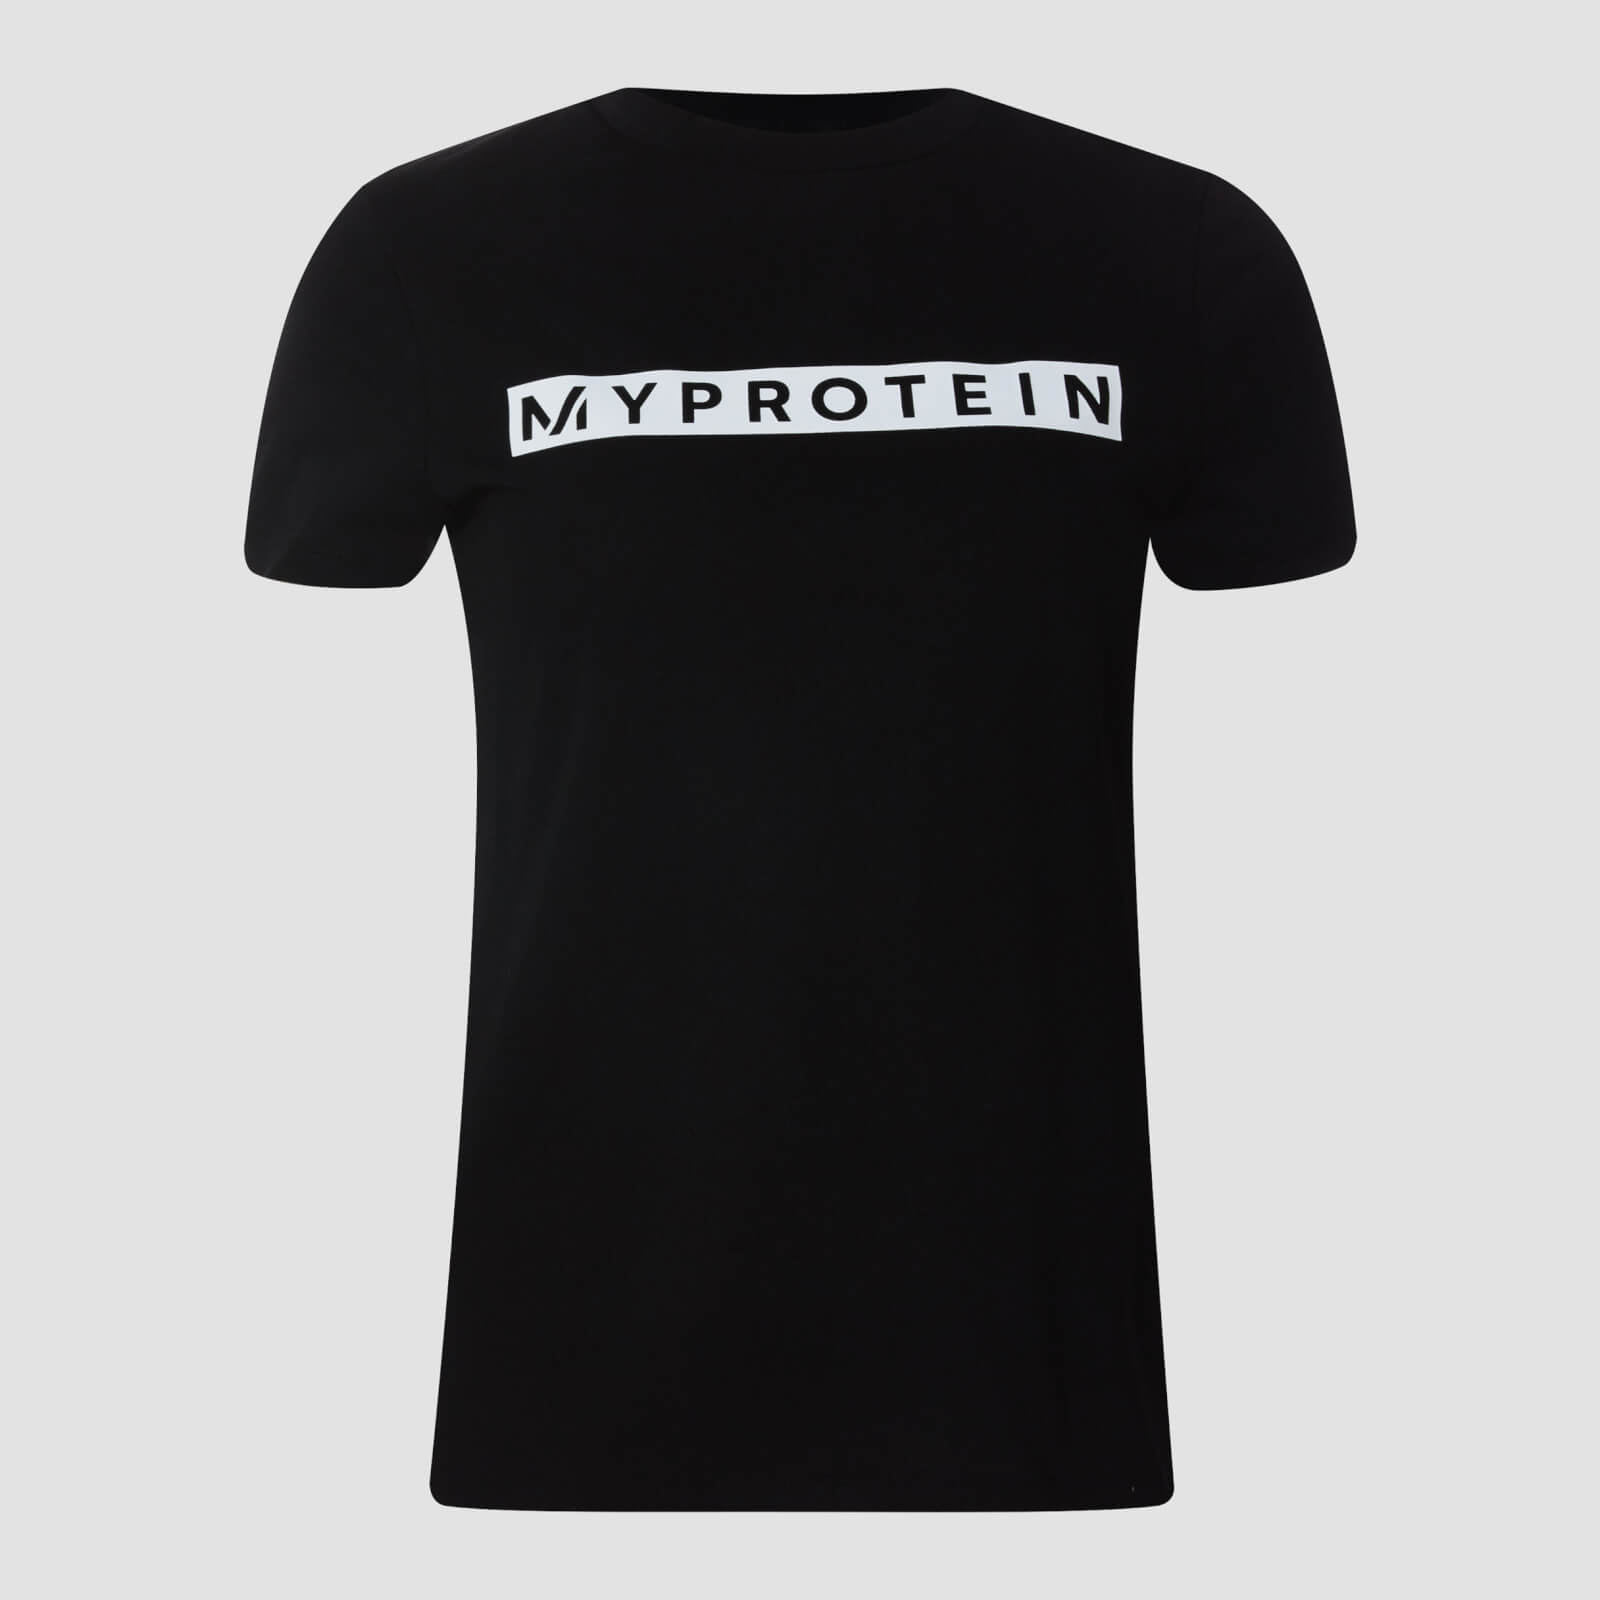 Myprotein Camiseta Originals de Mujer - Negro - L